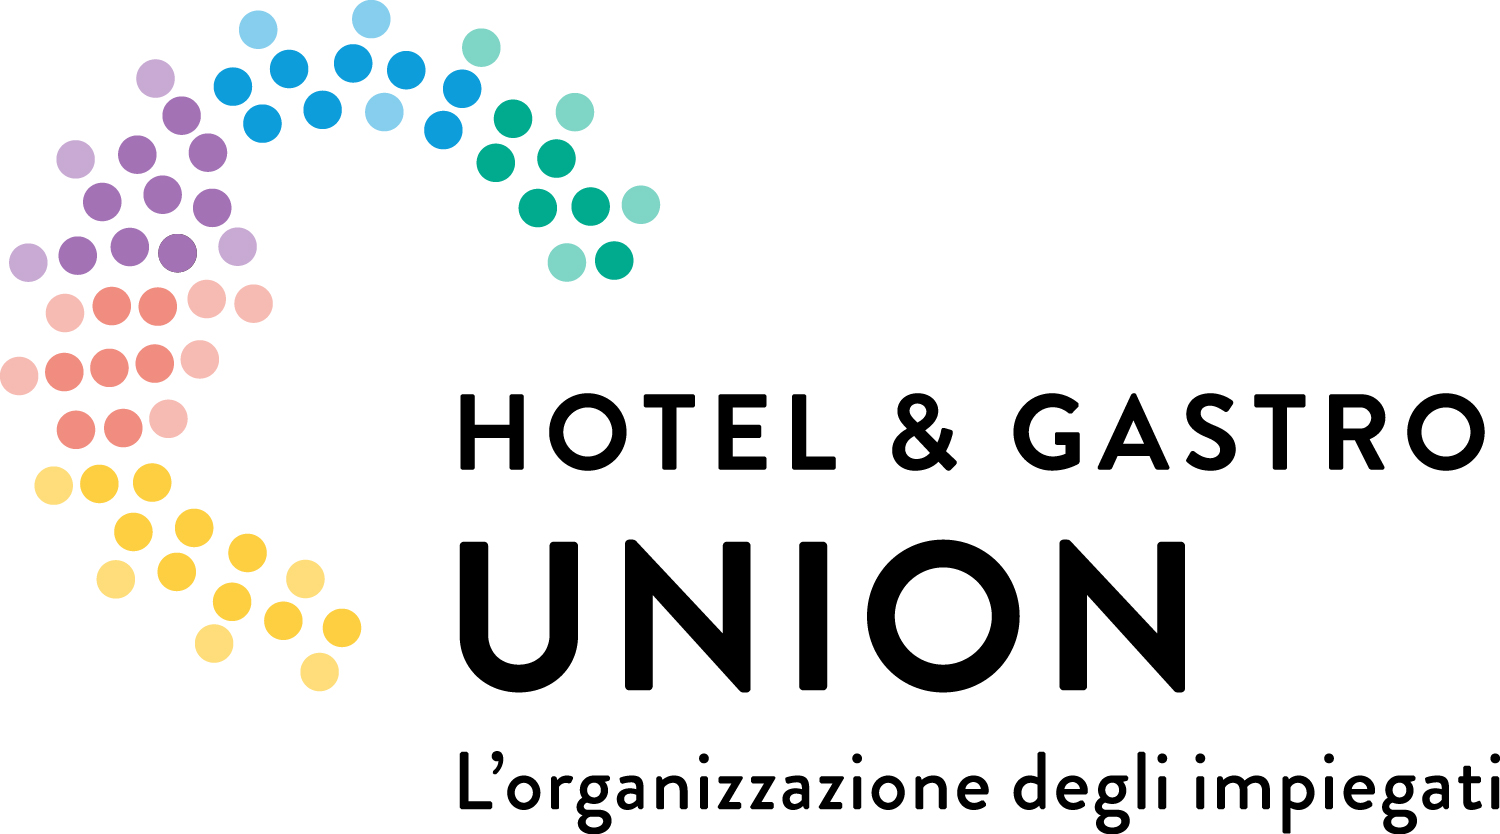 Hotel & Gastro Union